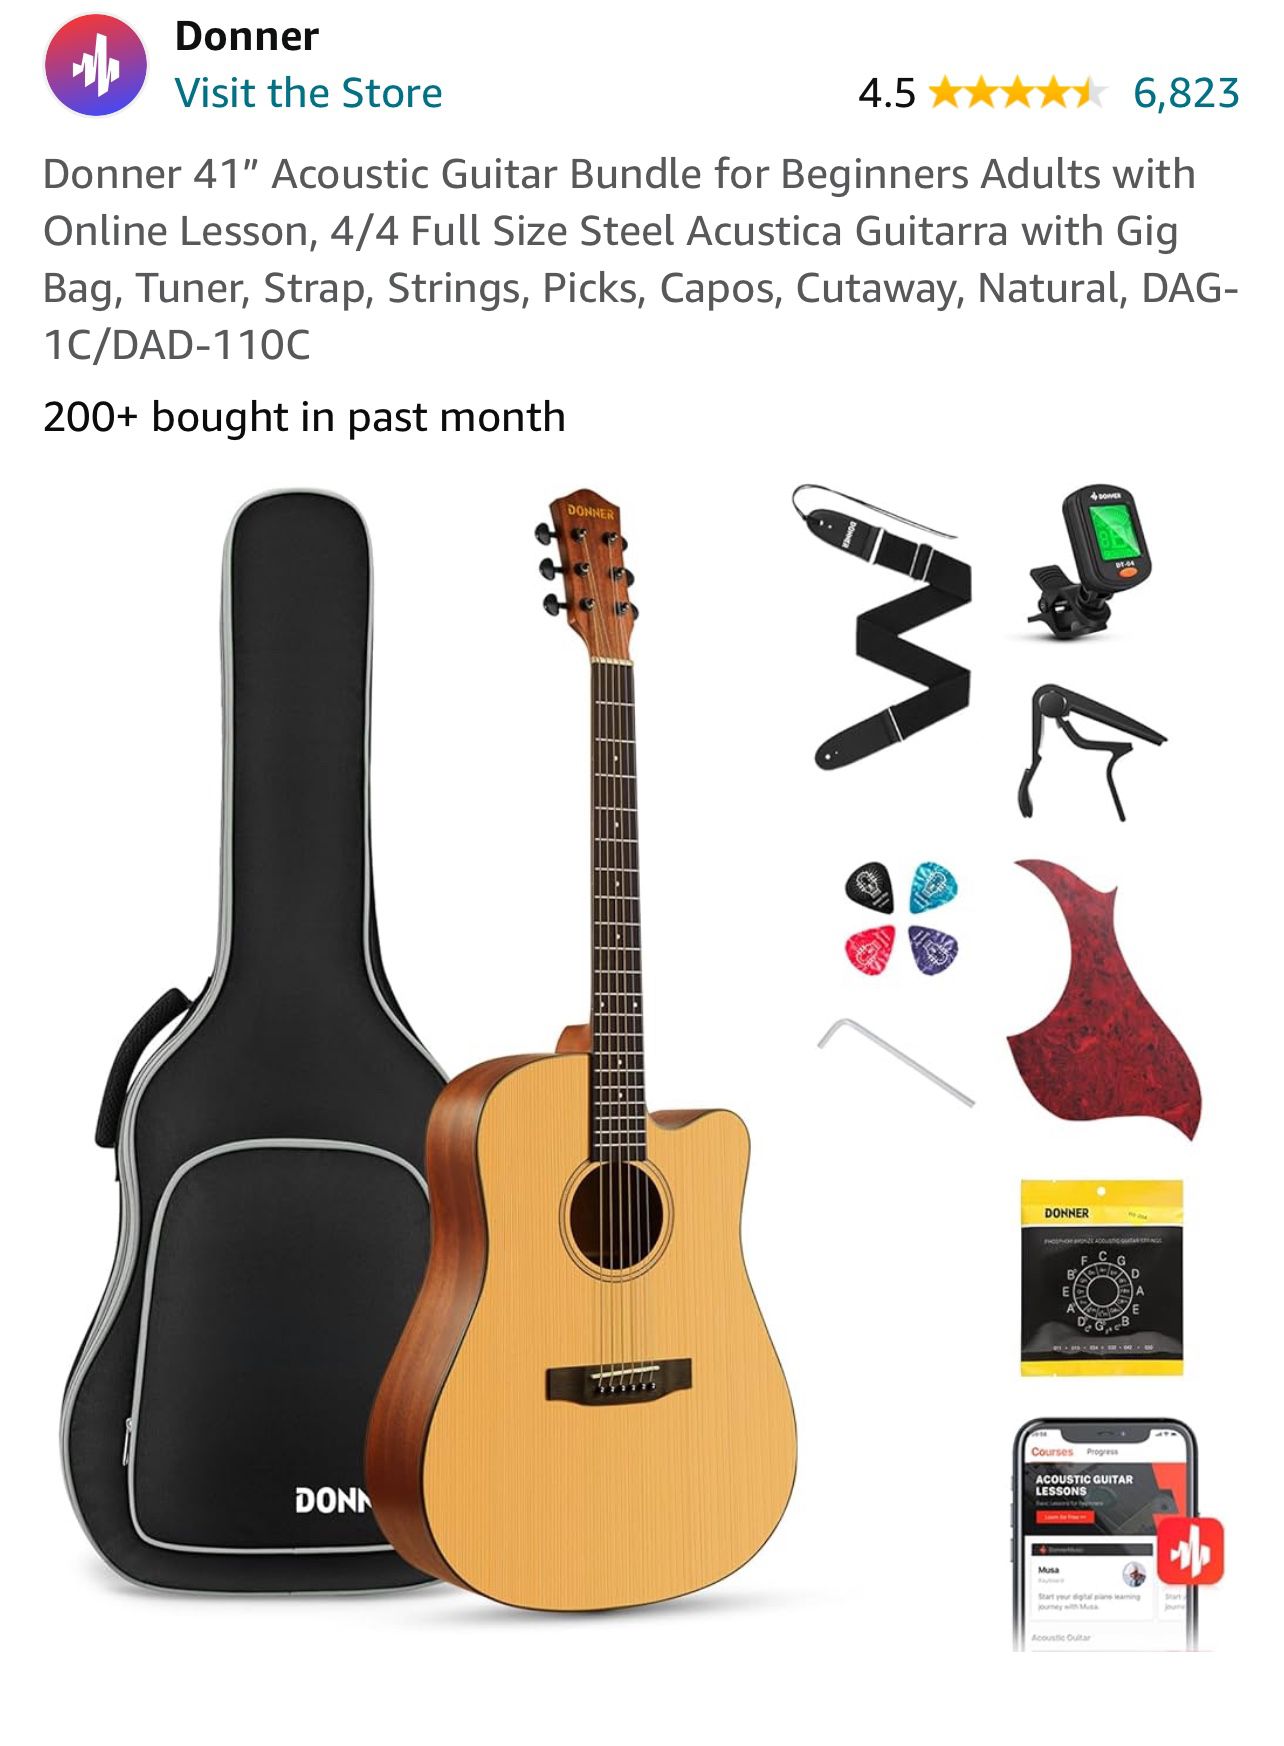 New Donner Acoustic Guitar Bundle 